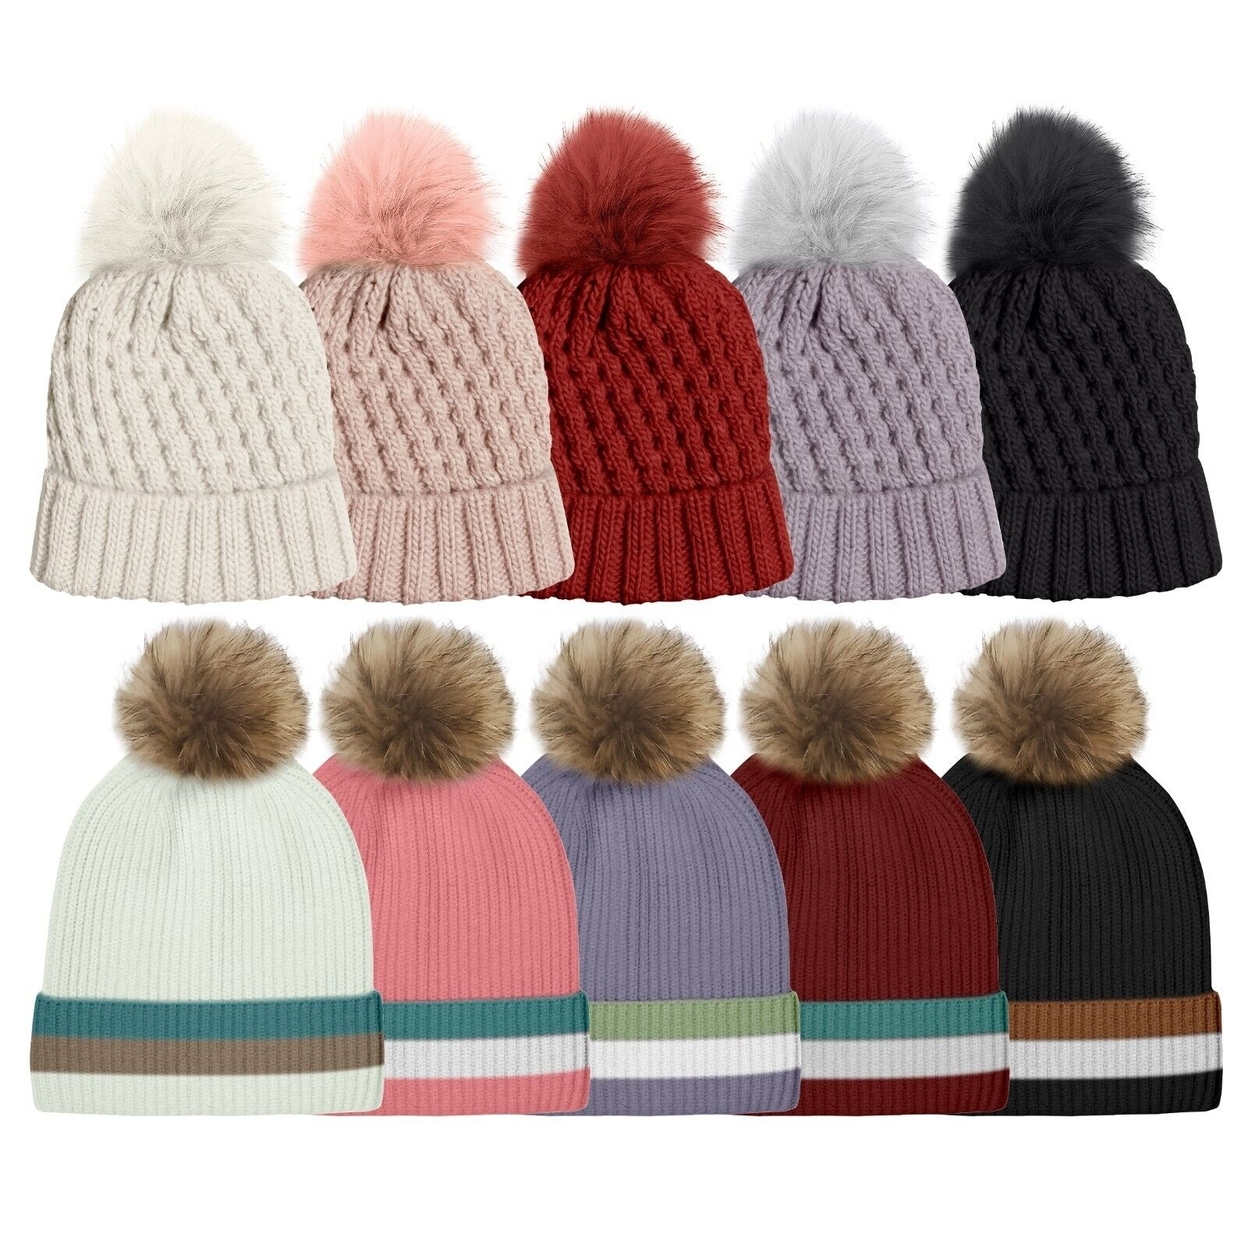 Women's Ultra Soft Winter Warm Knit Feel Pom Pom Hat W/ Faux Fur Lining - Solid